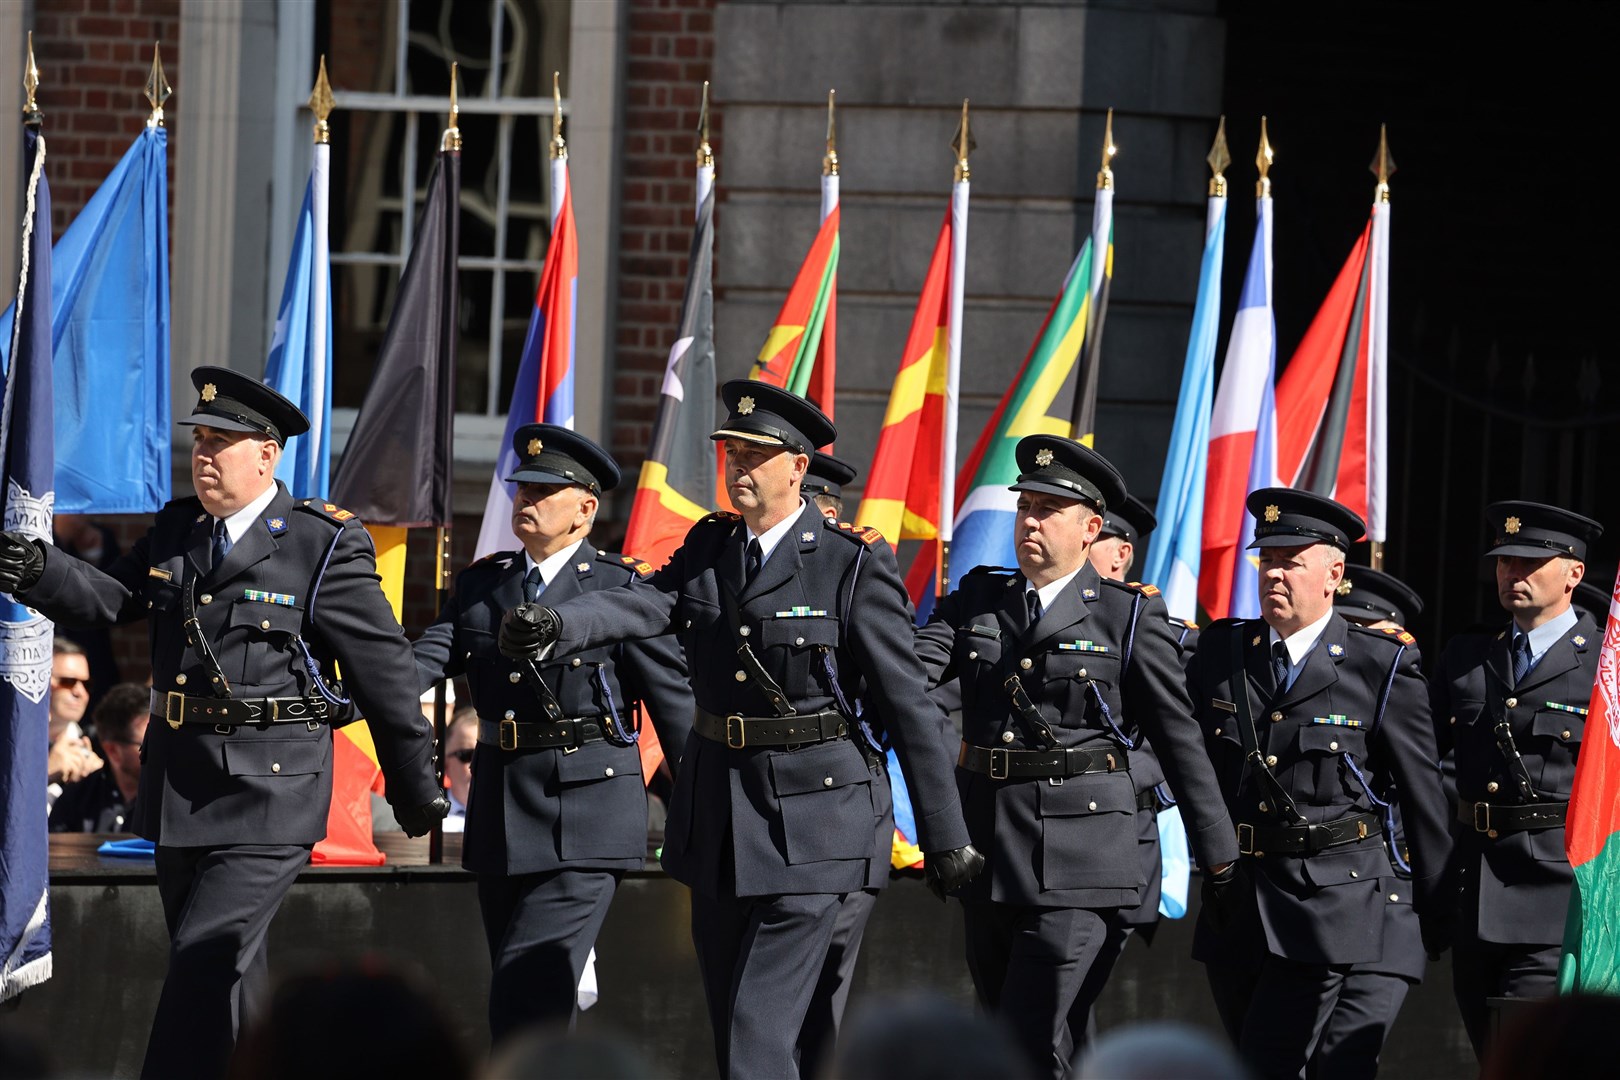 Gardai during a parade at Dublin Castle (Nick Bradshaw/PA)